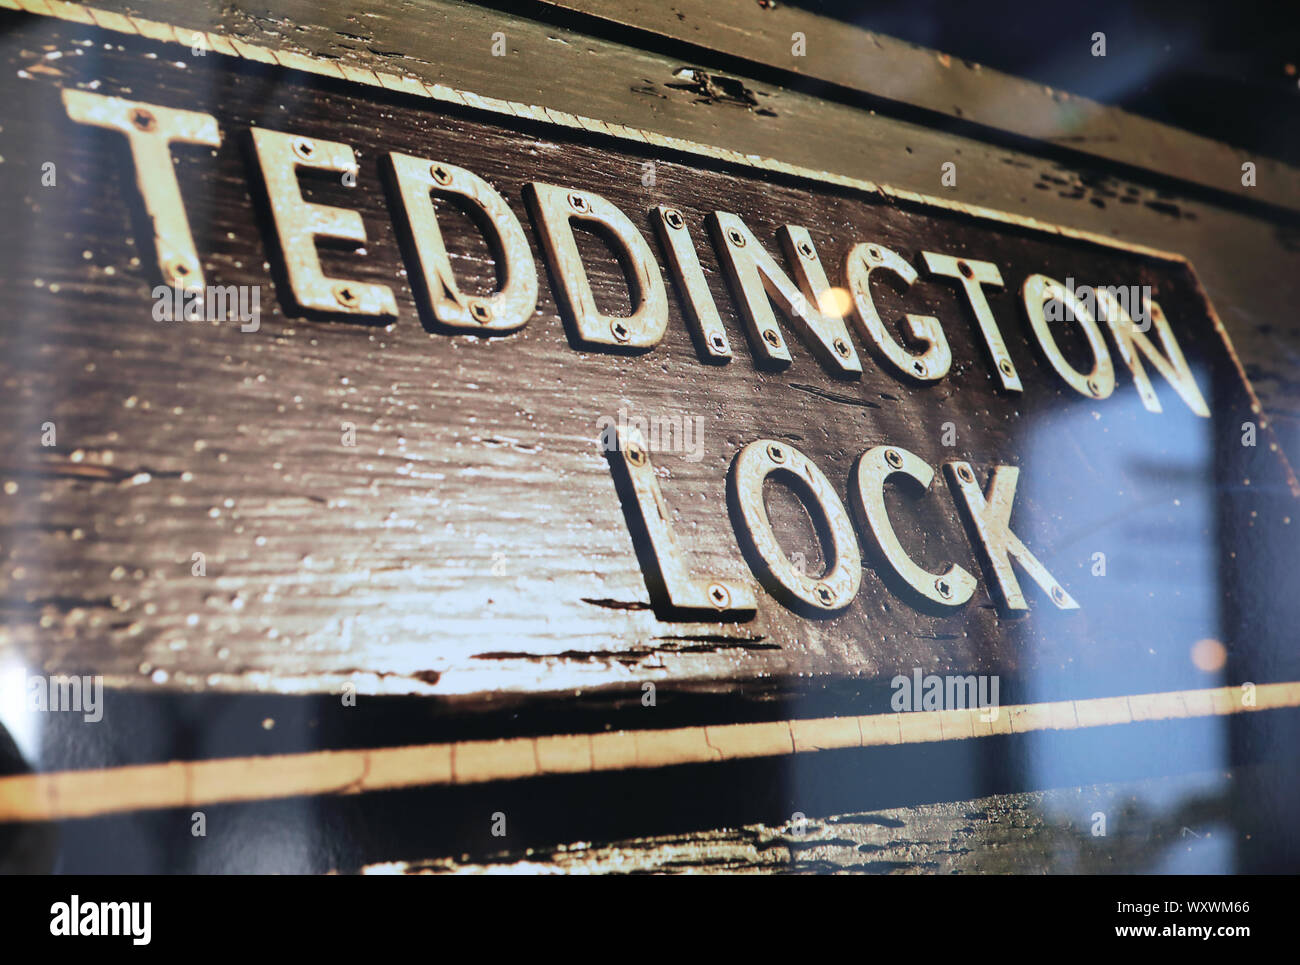 Erinnerungsstücke aus dem jetzt geschlossenen Teddington Lock TV-Studios im Pub der Angler in Teddington, Middx, Großbritannien Stockfoto